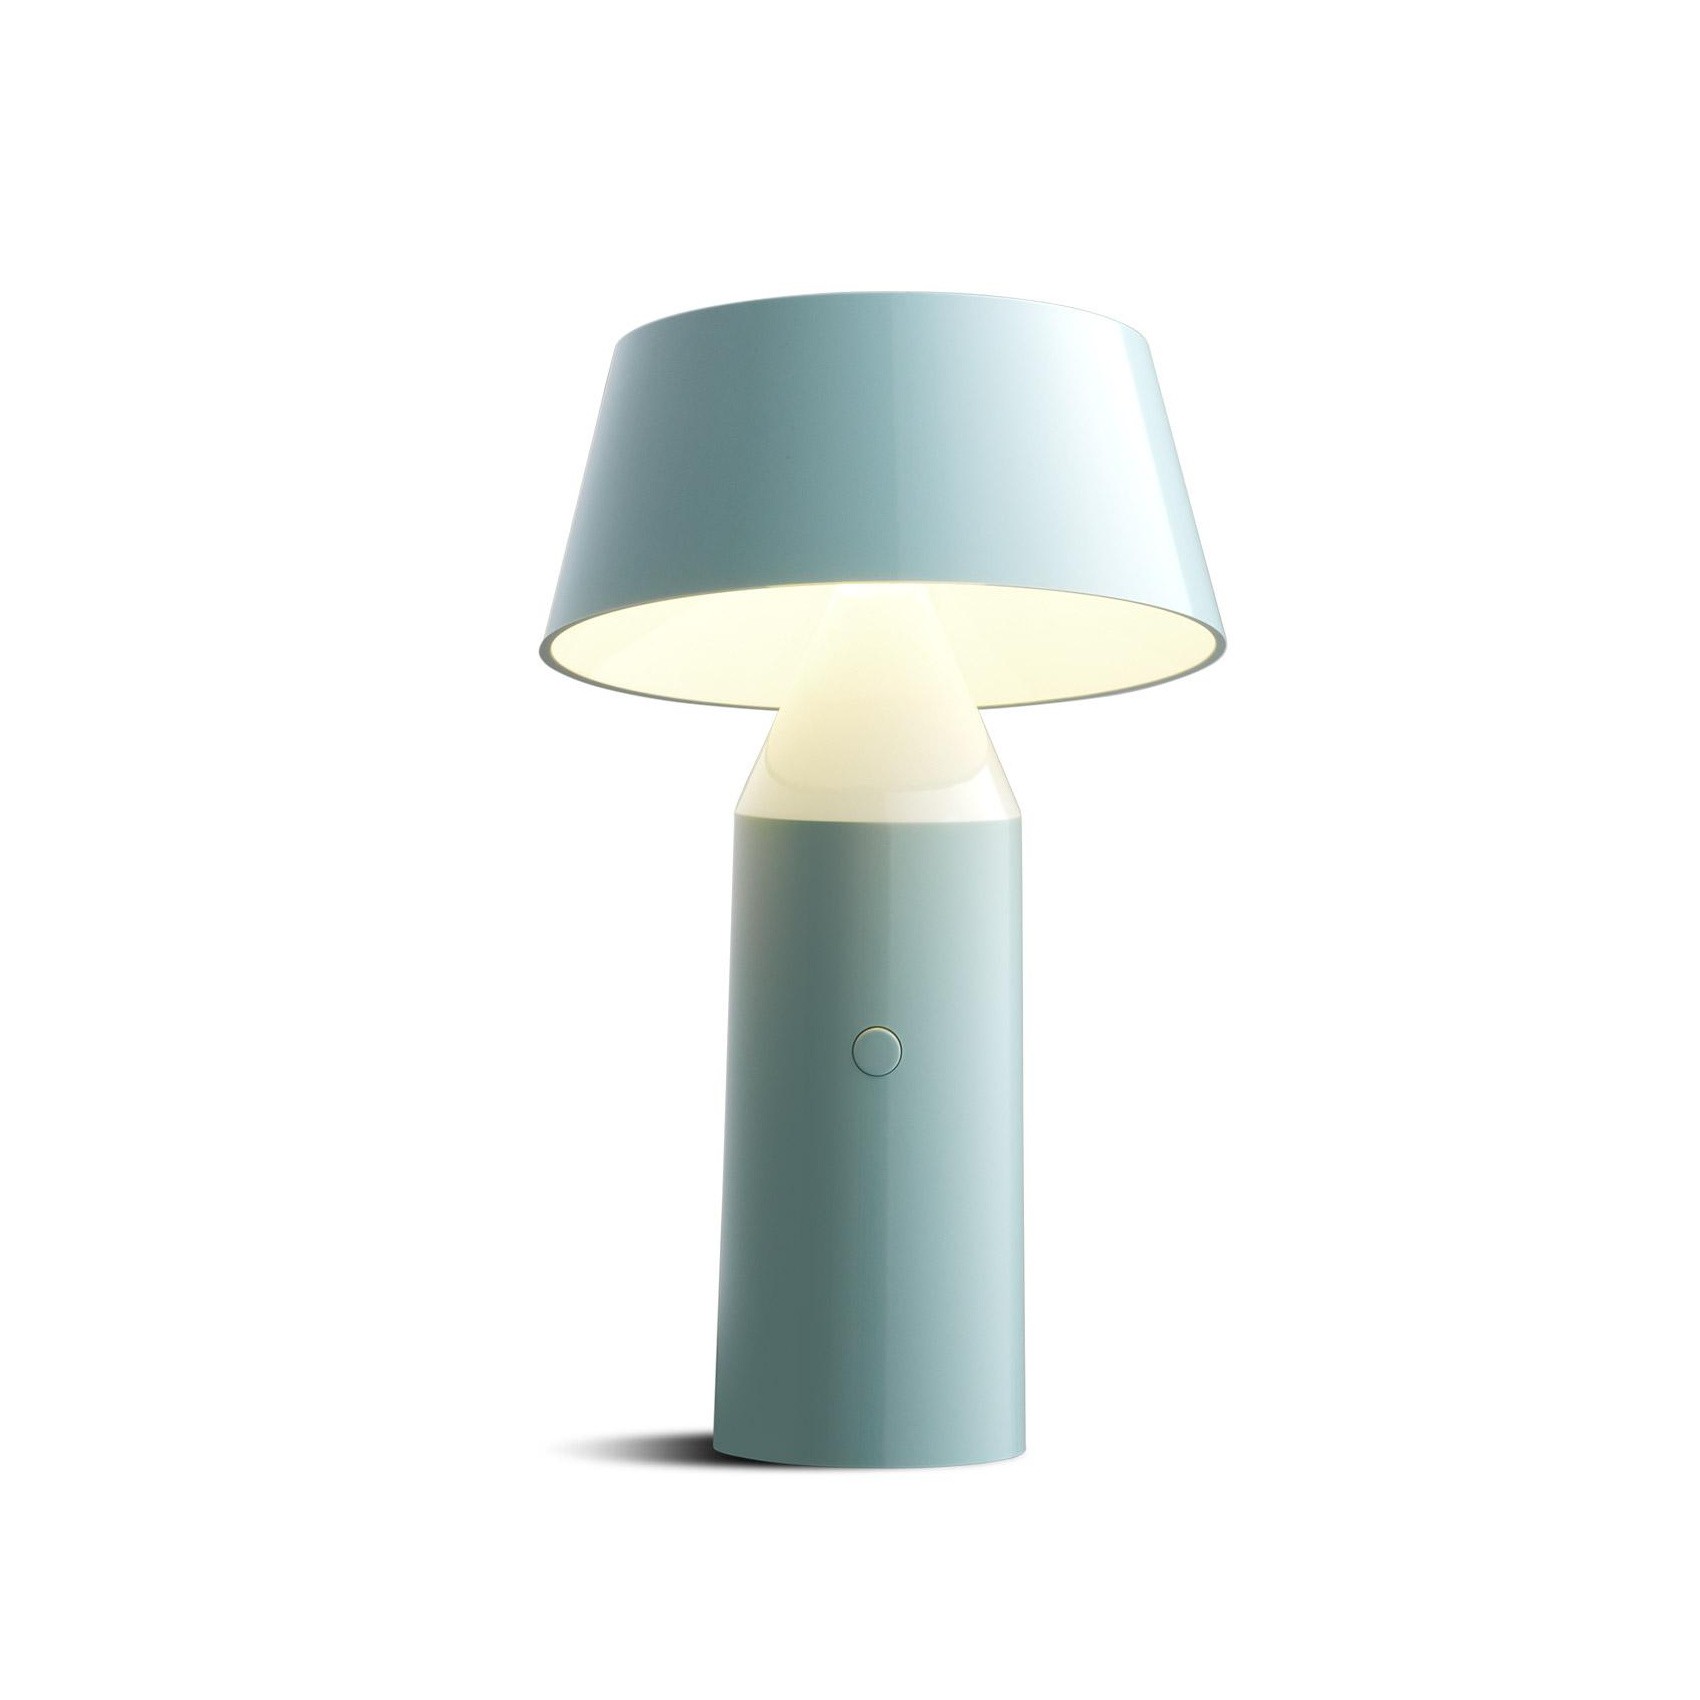 BICOCA portable table lamp